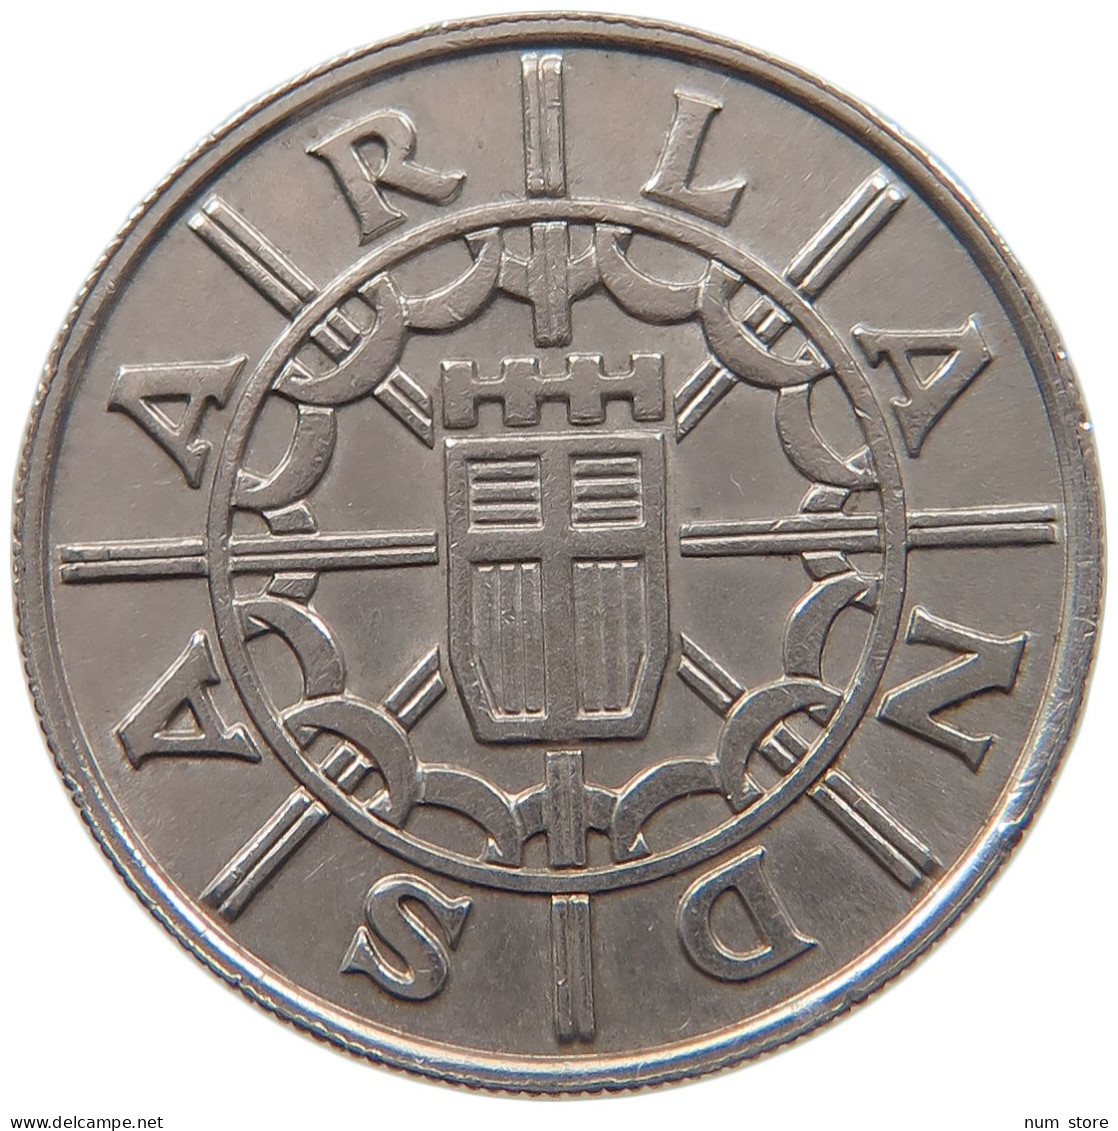 SAARLAND 100 FRANKEN 1955  #MA 104562 - 100 Francos